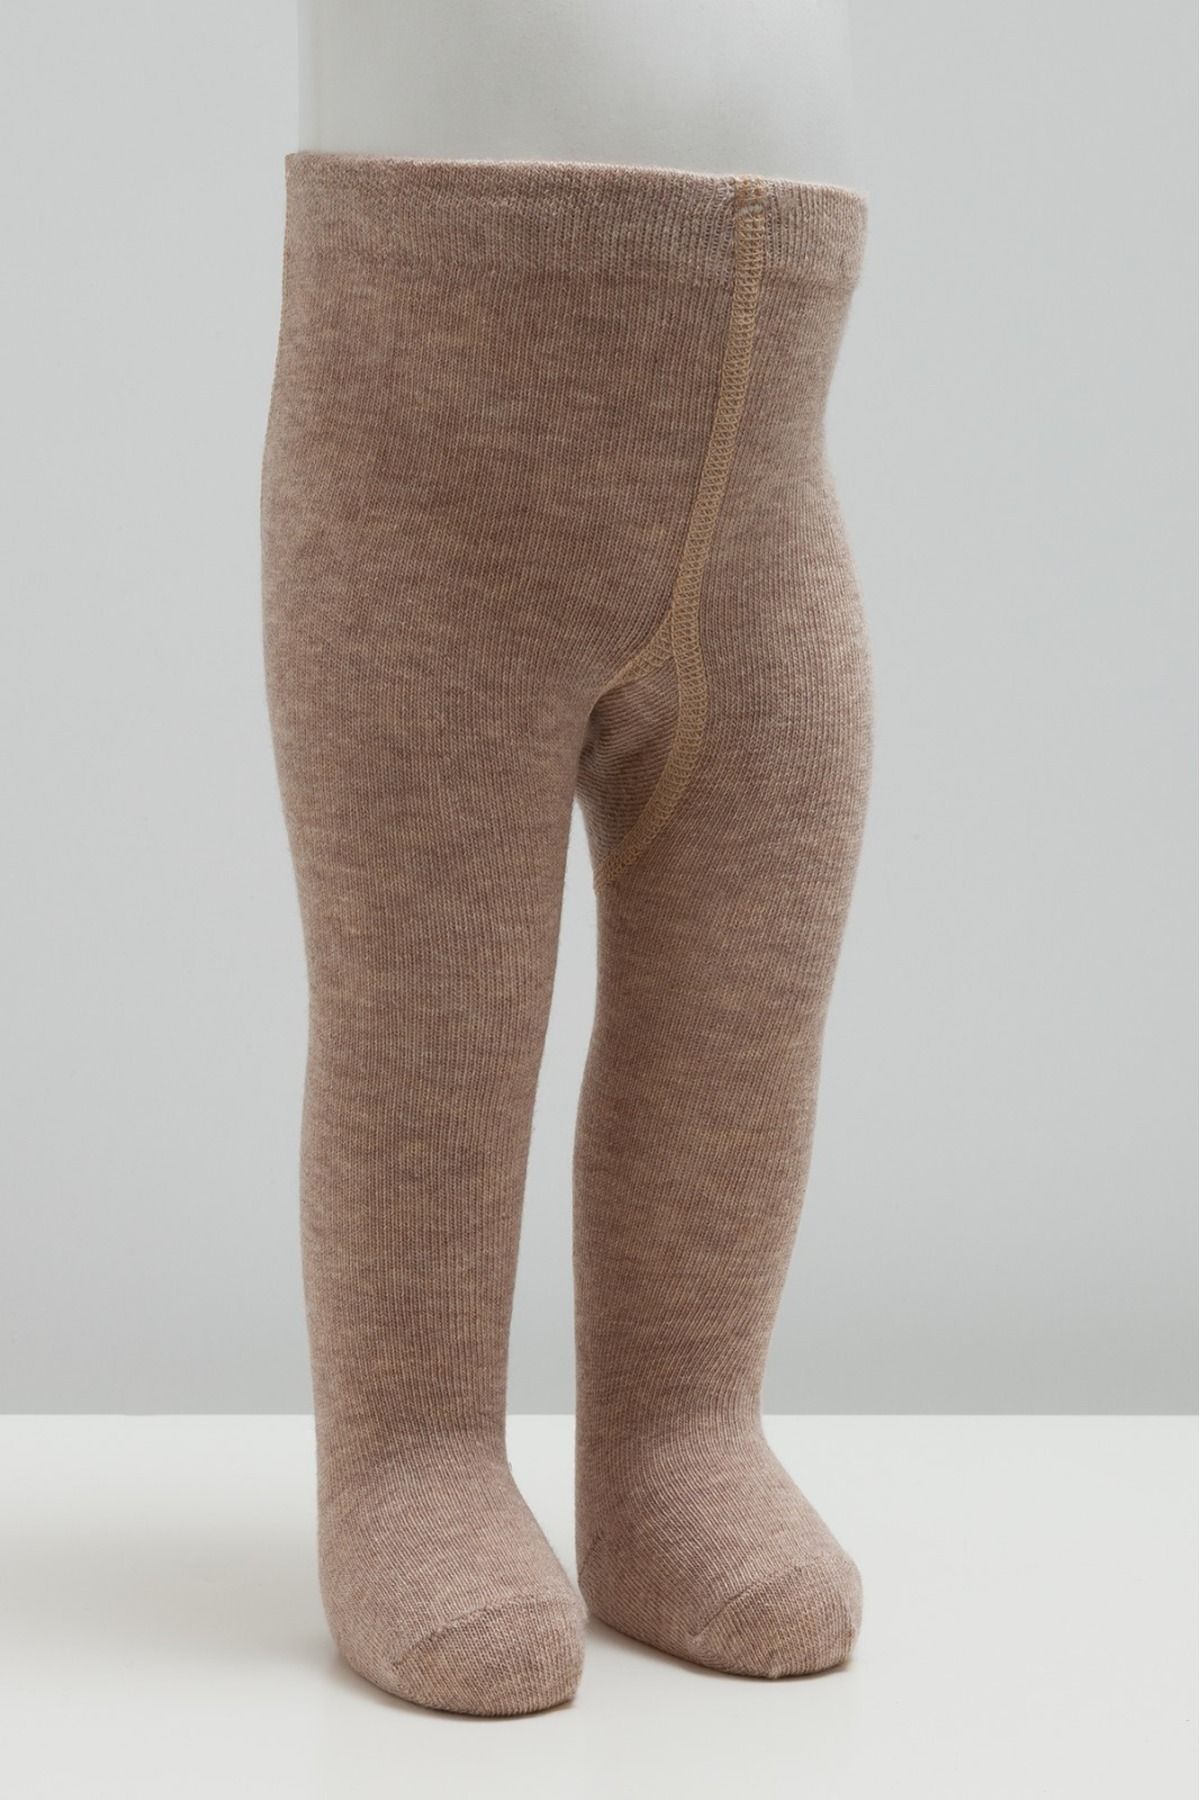 Caramell Erkek Düz Bej Mevsimsel Kalınlıkta Külotlu Çorap